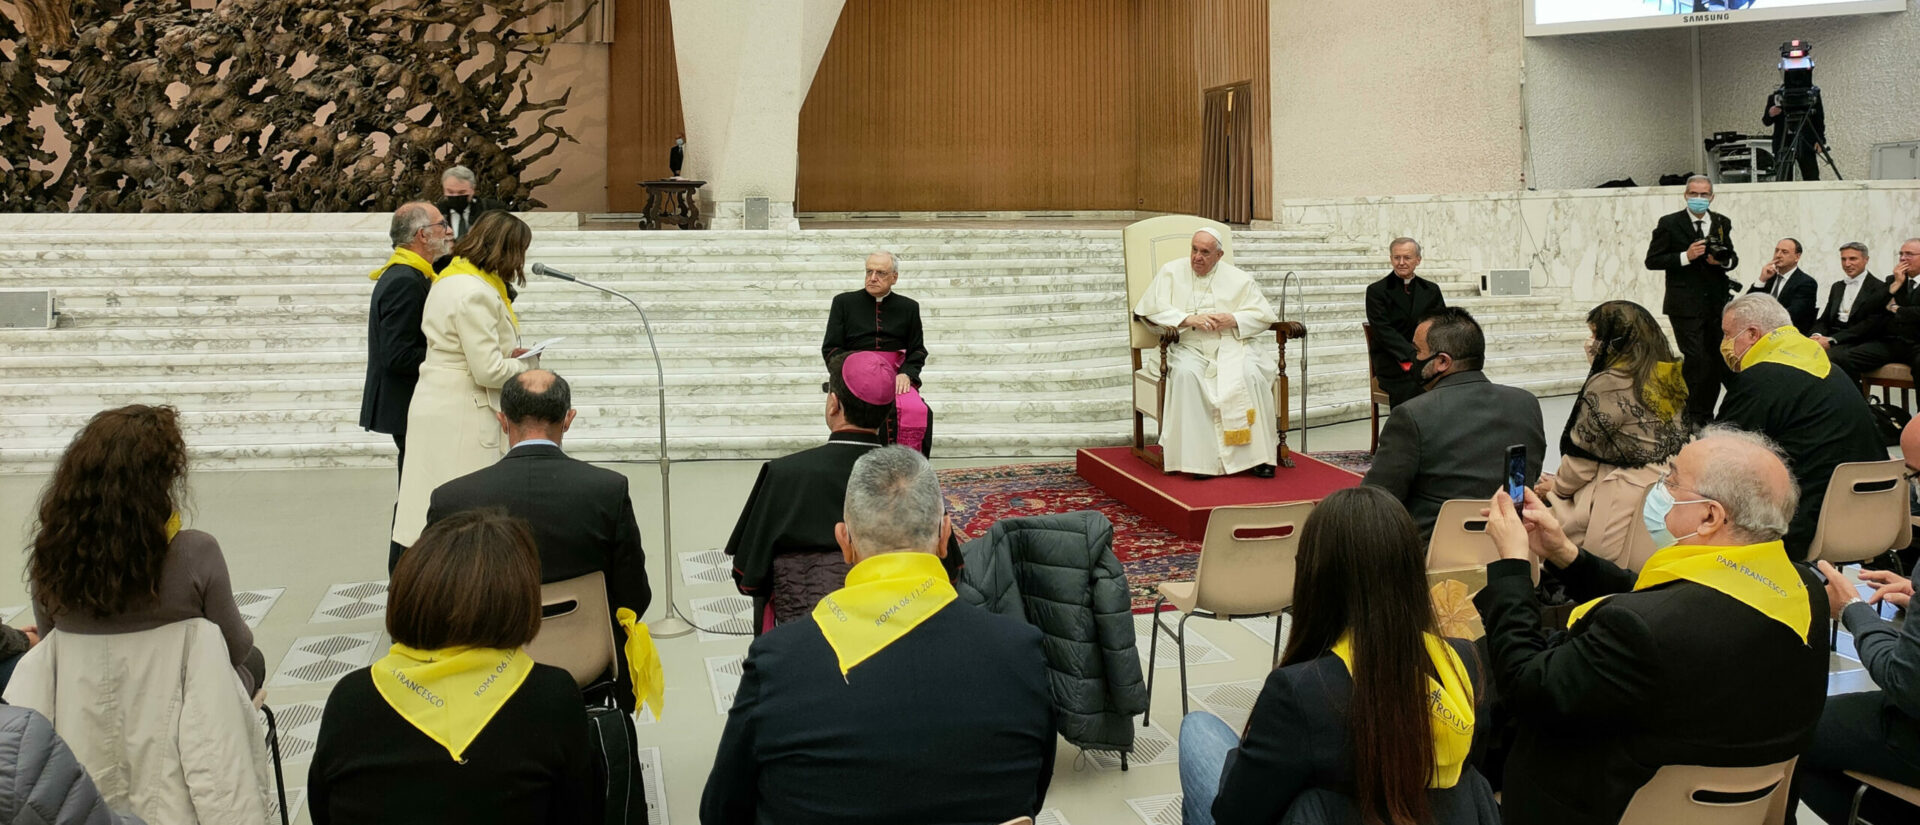 Les membres de l'association Retrouvaille ont rencontré le pape dans la salle Paul VI | © Retrouvaille